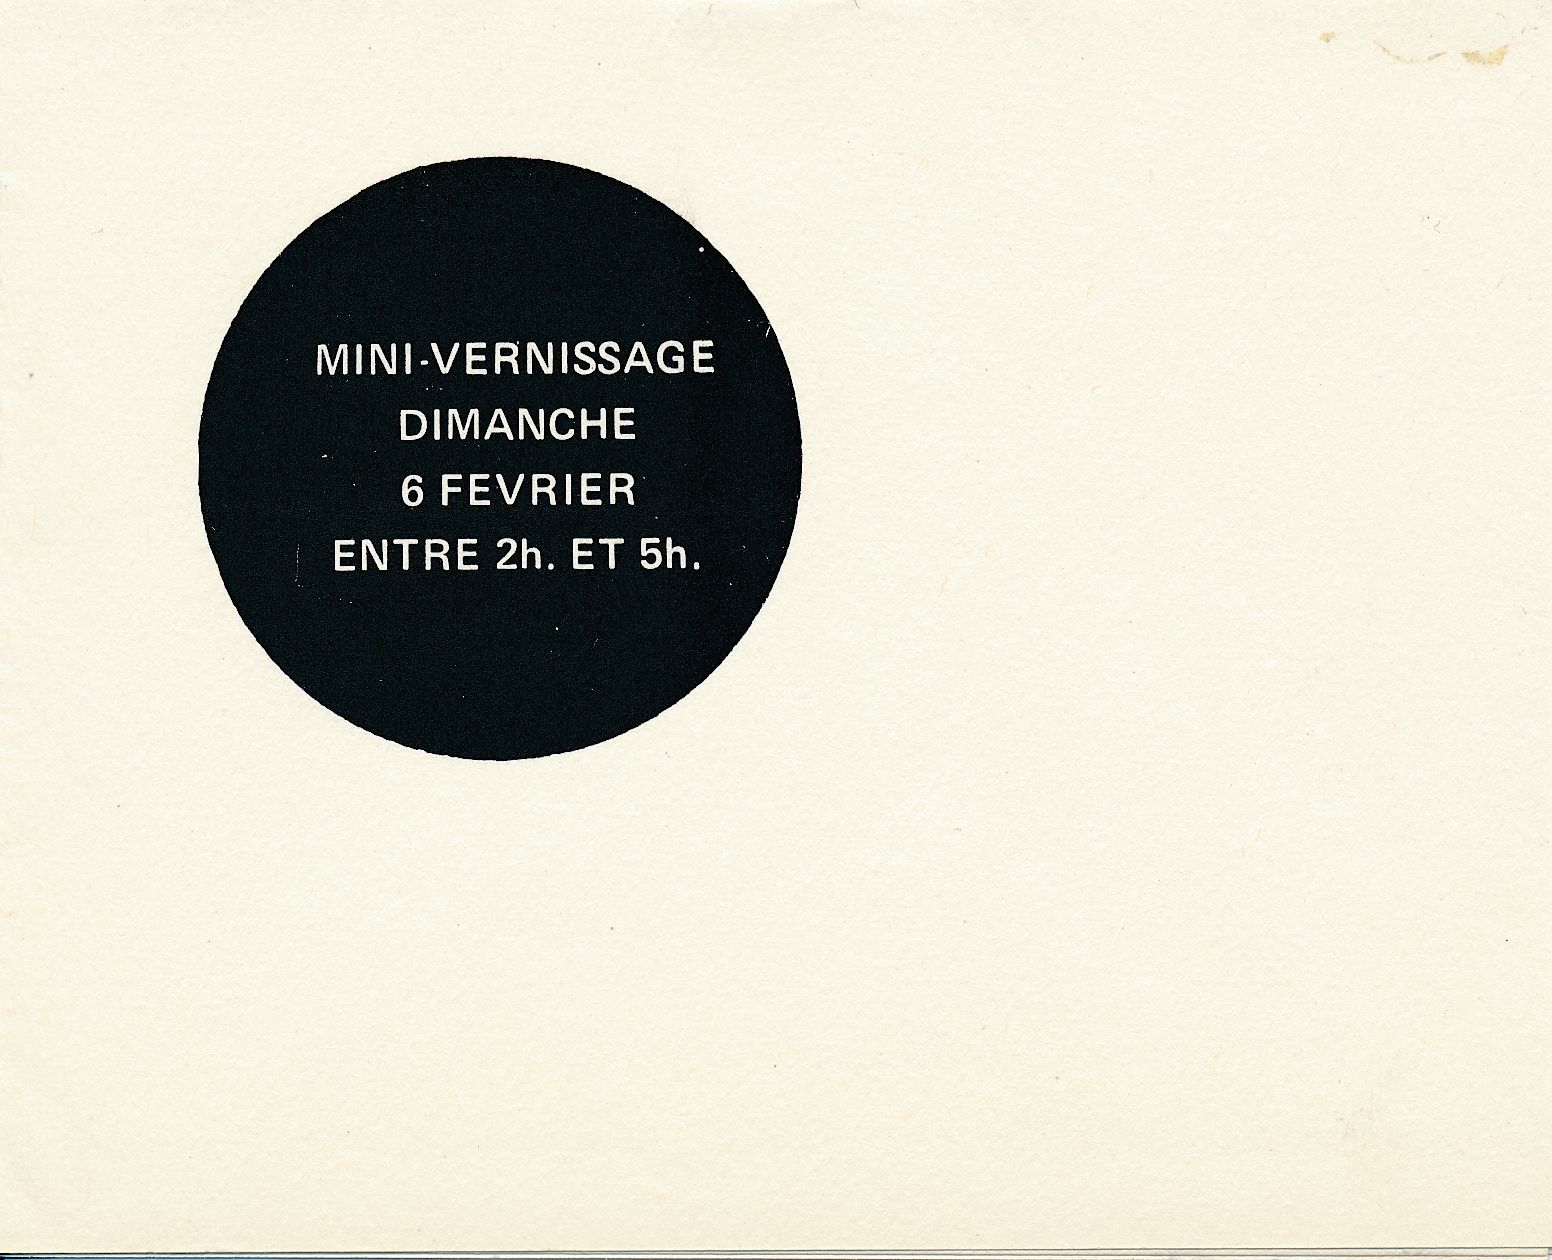 Carton d’invitation de l’exposition, Louise Robert, Galerie François Paris, Montréal, 1972.